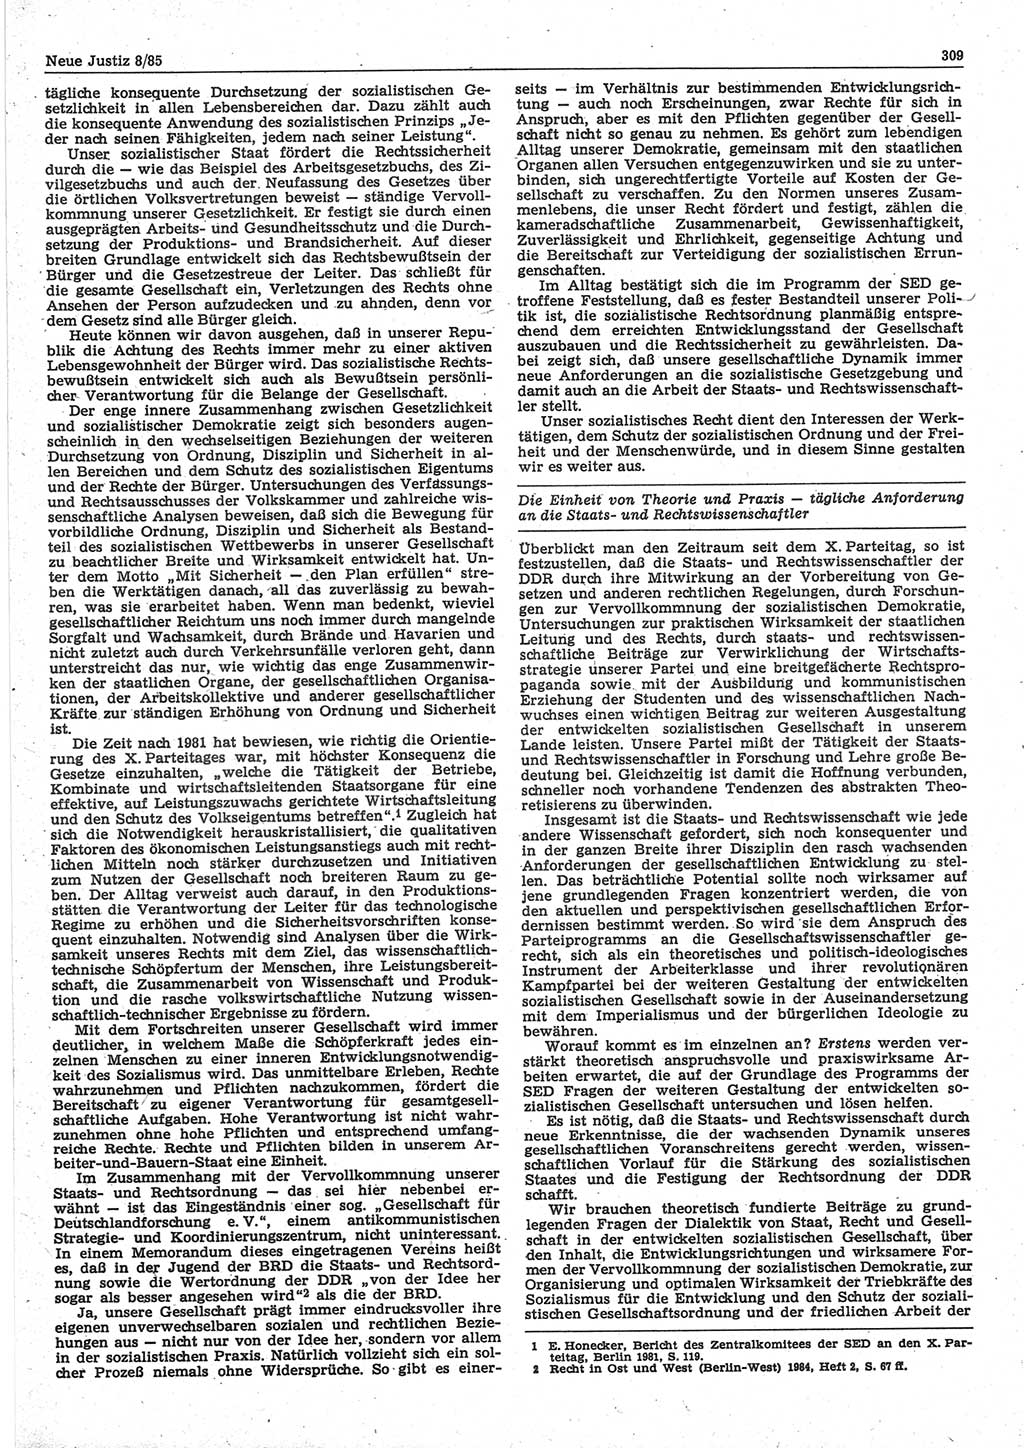 Neue Justiz (NJ), Zeitschrift für sozialistisches Recht und Gesetzlichkeit [Deutsche Demokratische Republik (DDR)], 39. Jahrgang 1985, Seite 309 (NJ DDR 1985, S. 309)